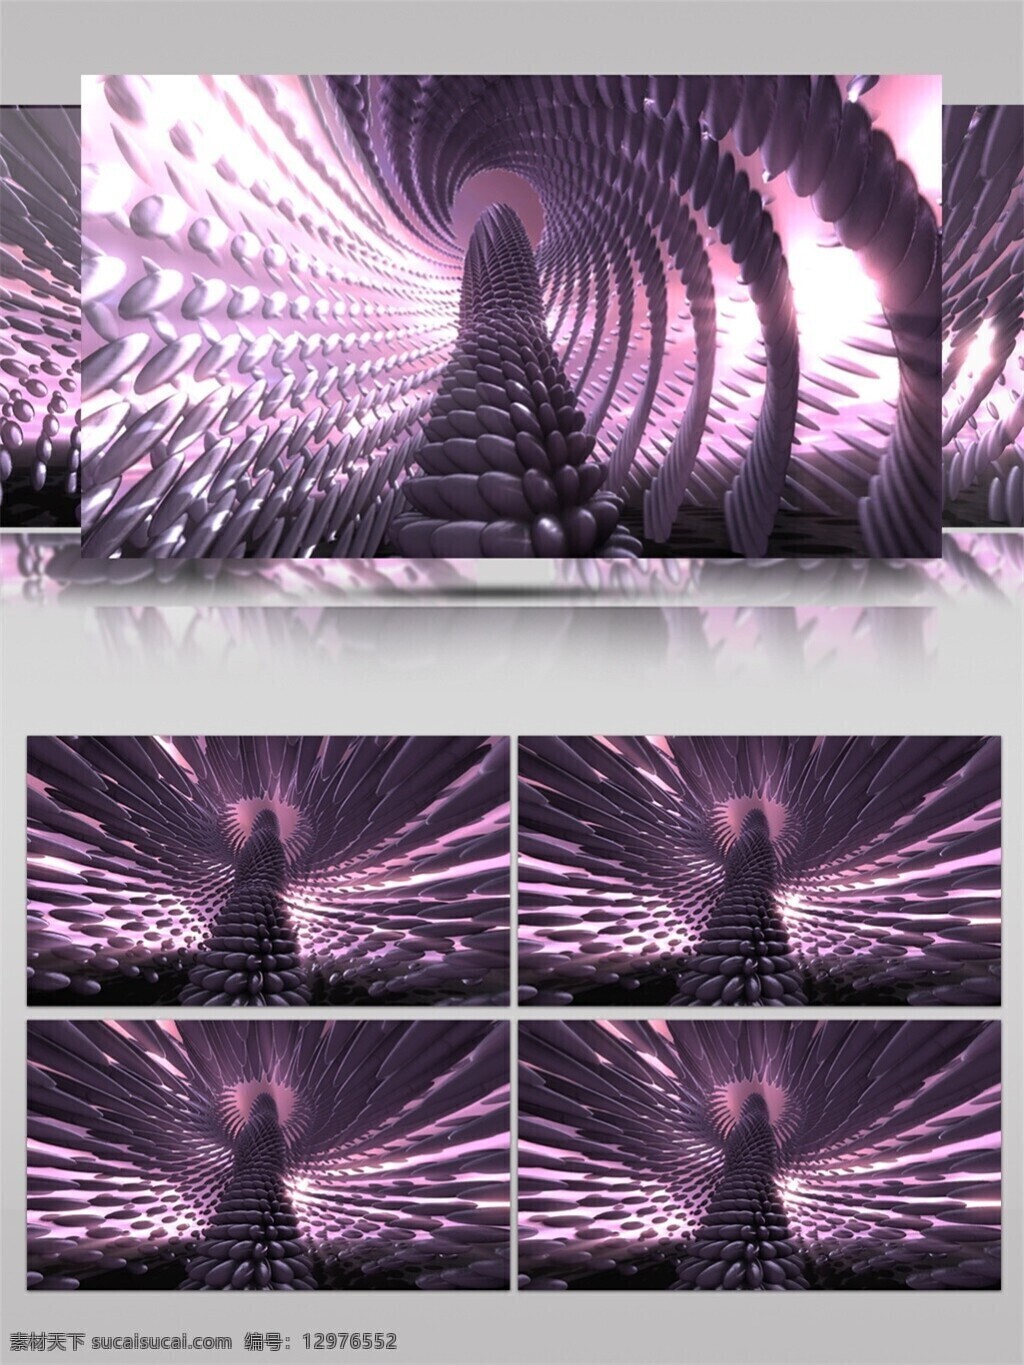 紫光 螺旋 灯塔 动态 视频 光束 灯光 紫色 唯美背景素材 视觉享受 节目灯光